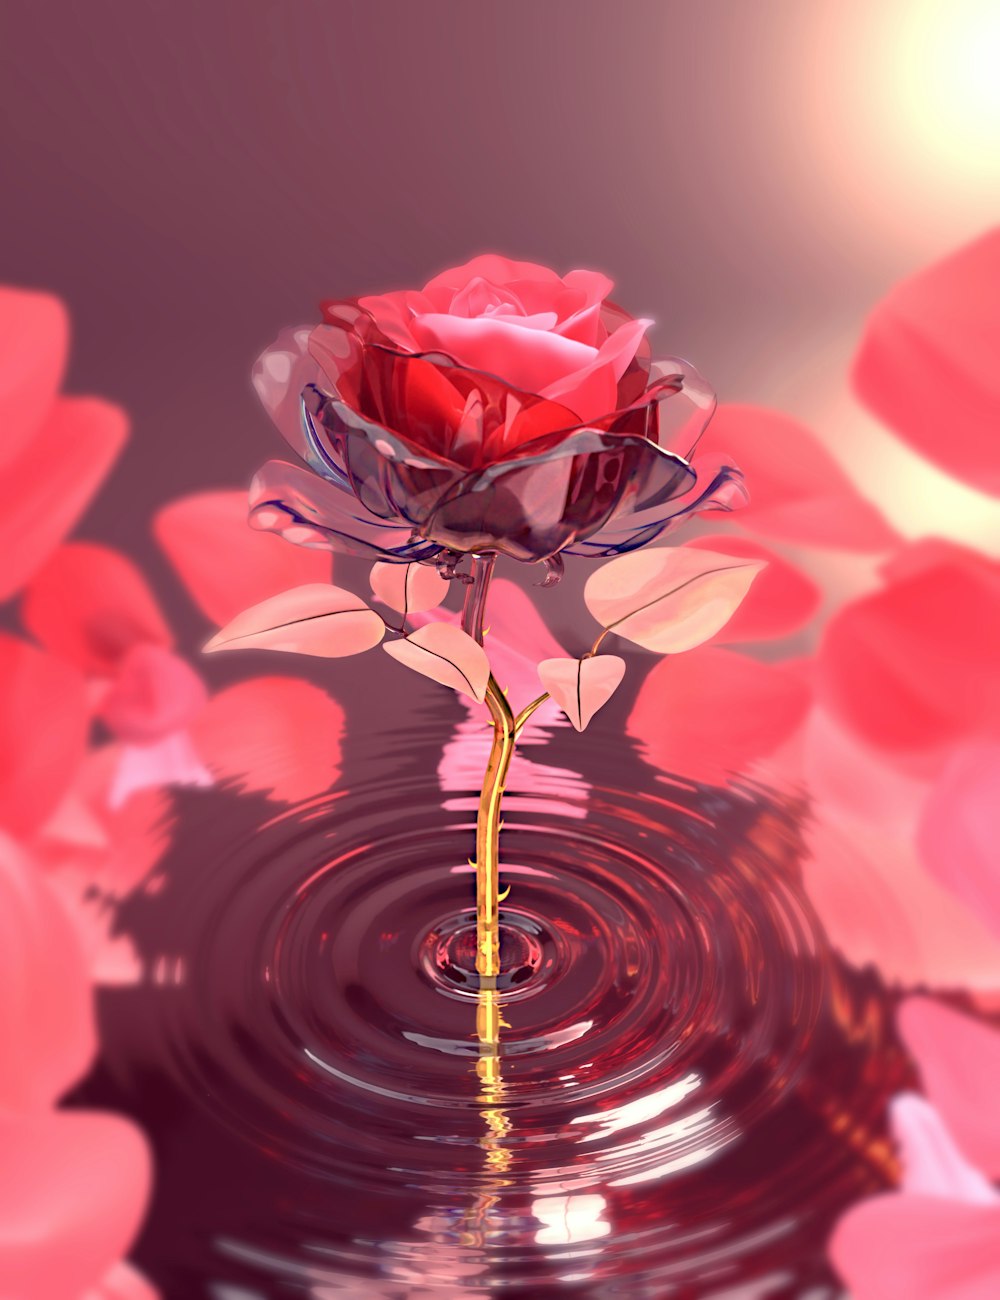 물 위에 떠 있는 빨간 장미